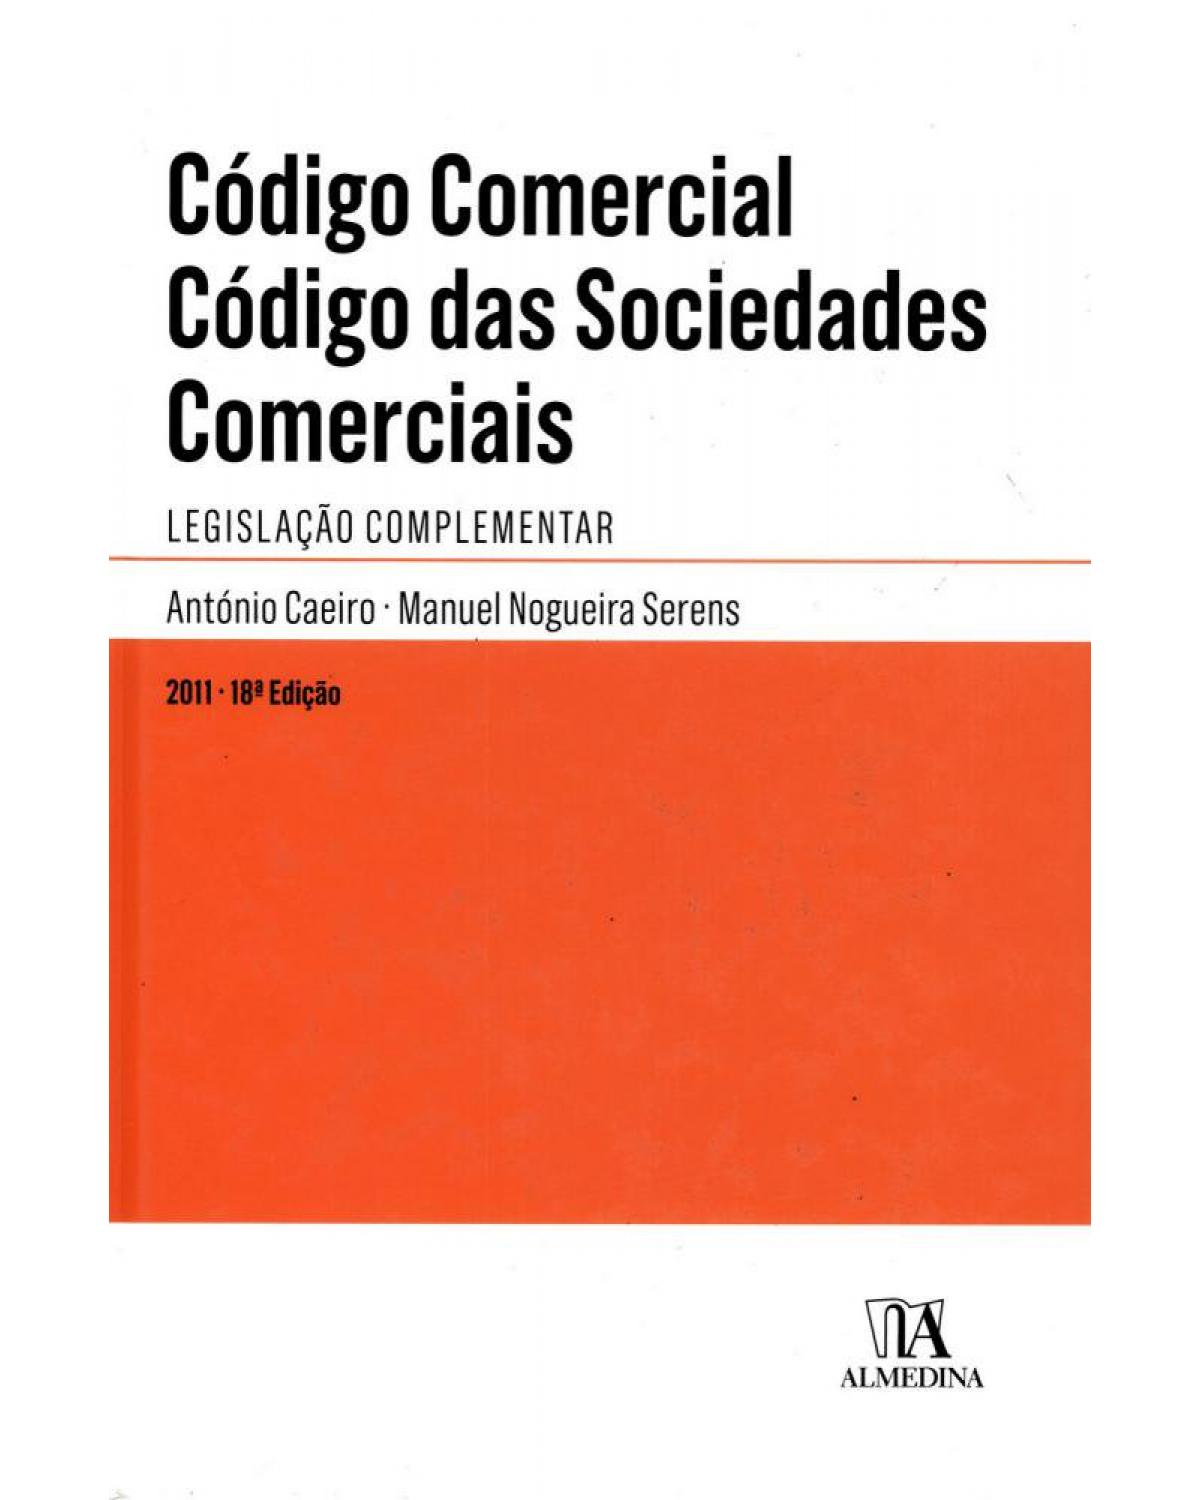 Código comercial - código das sociedades comerciais - Legislação complementar - 18ª Edição | 2011